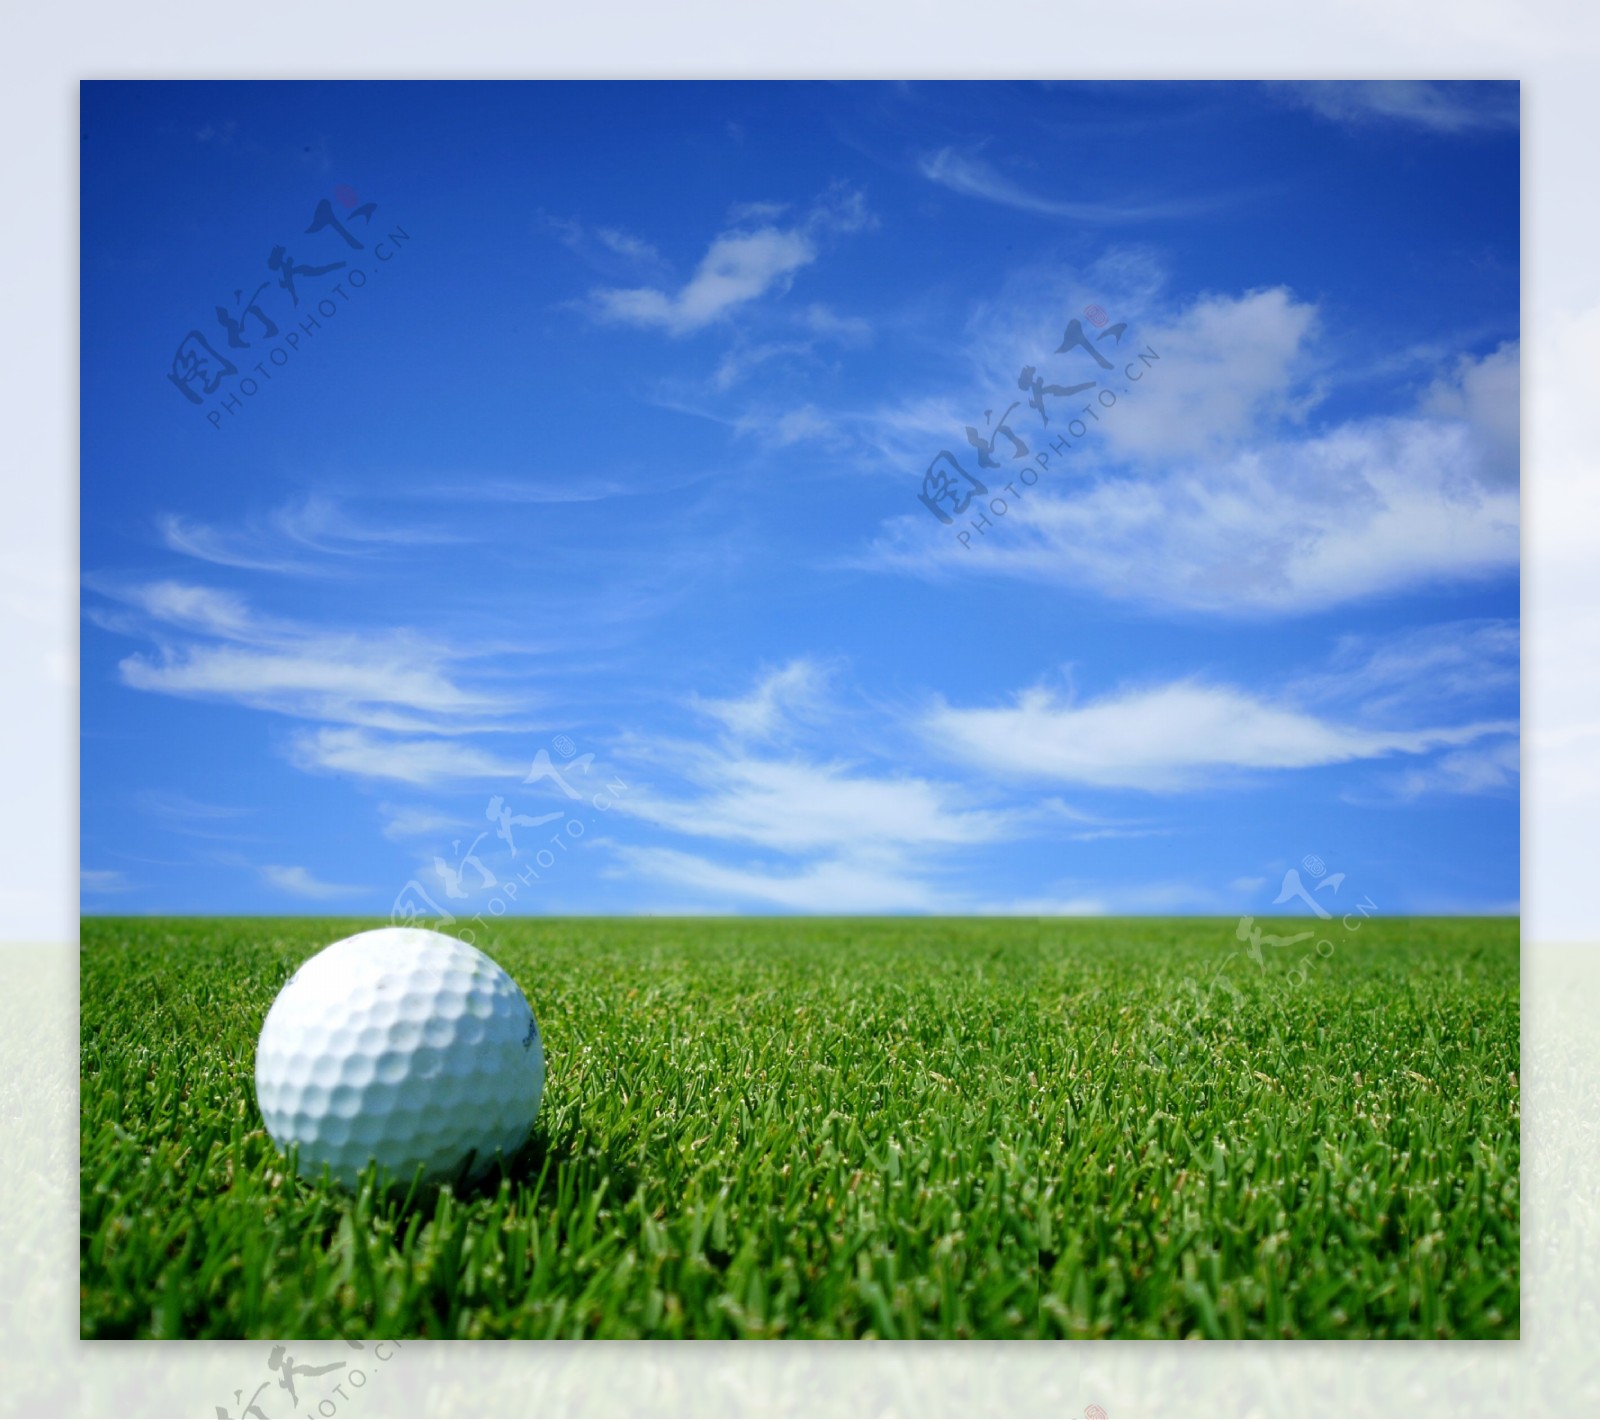 蓝天下的高尔夫球图片